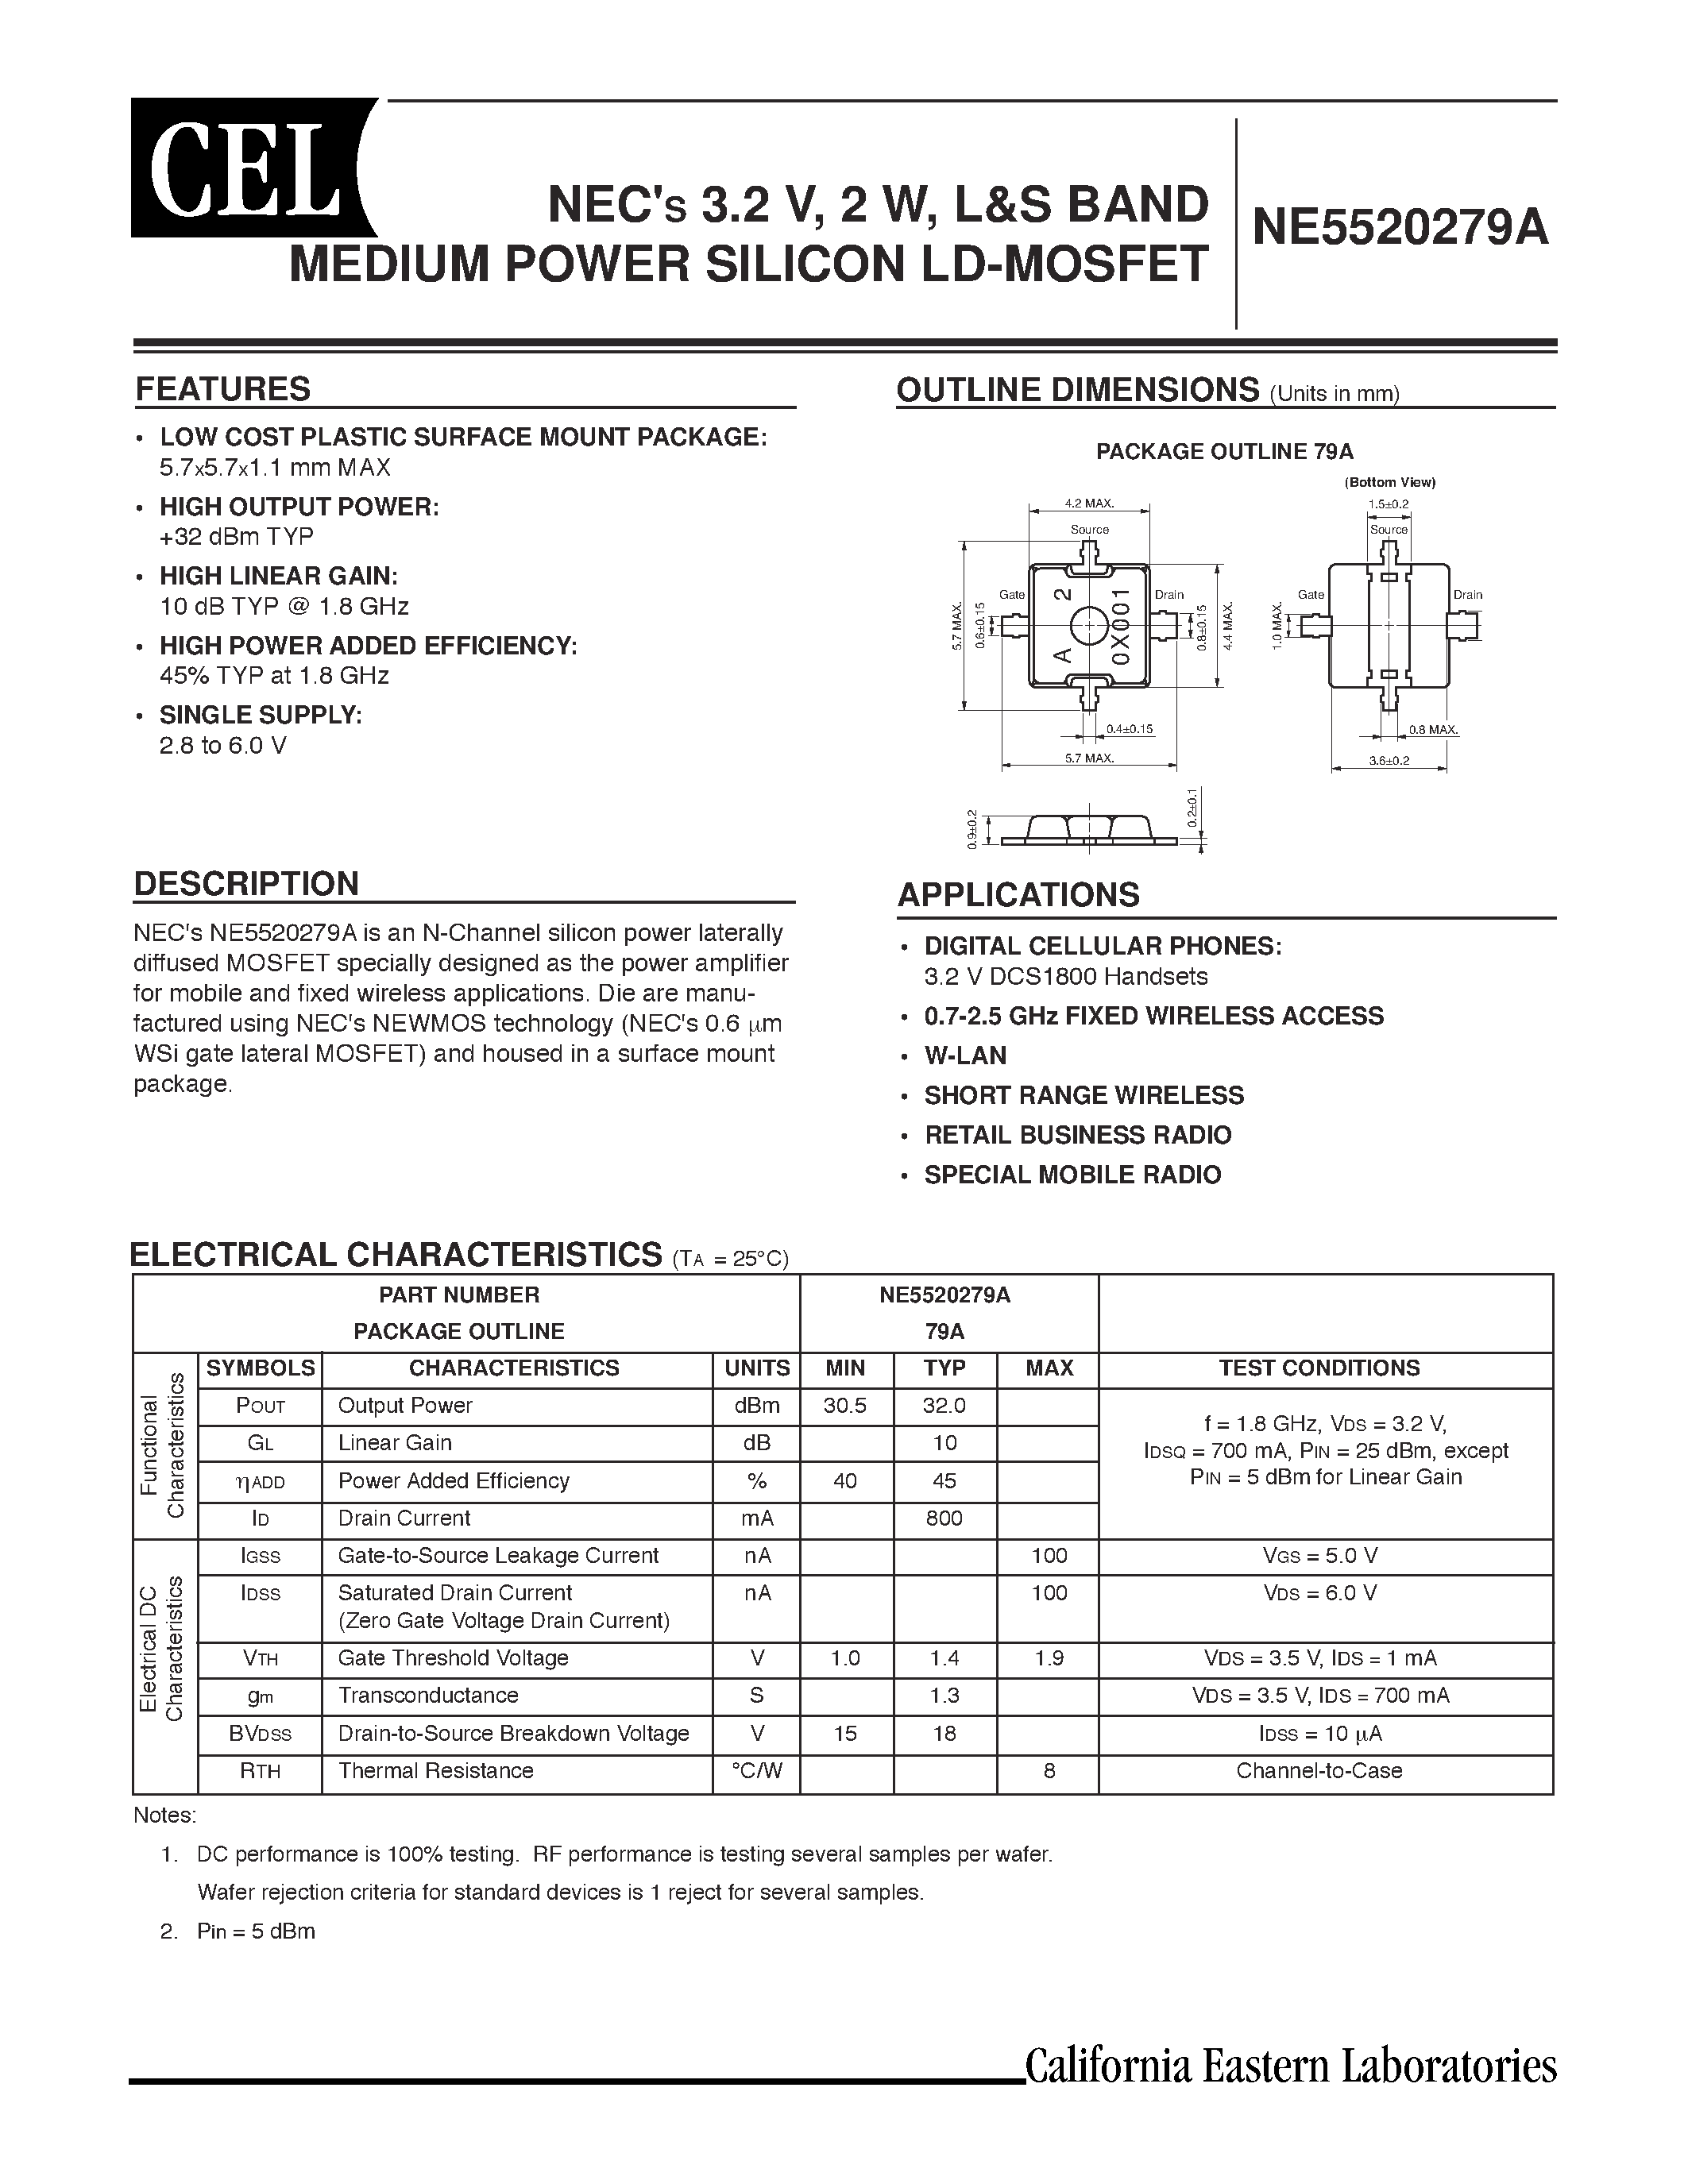 Даташит NE5520279A-T1 - NECS 3.2 V / 2 W / L&S BAND MEDIUM POWER SILICON LD-MOSFET страница 1